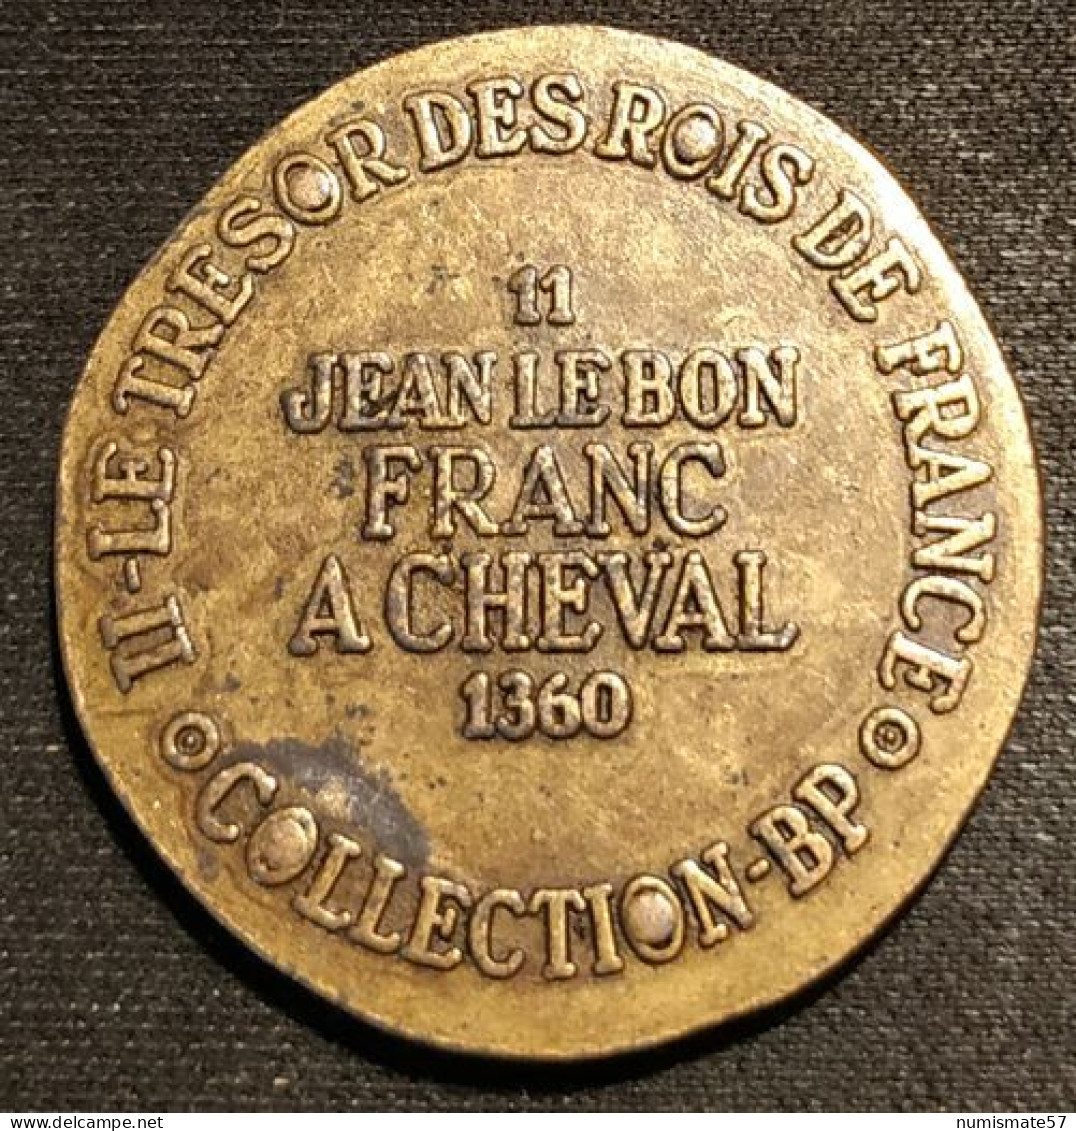 JETON - COLLECTION BP - JEAN LEBON - FRANC A CHEVAL 1360 - Professionnels / De Société